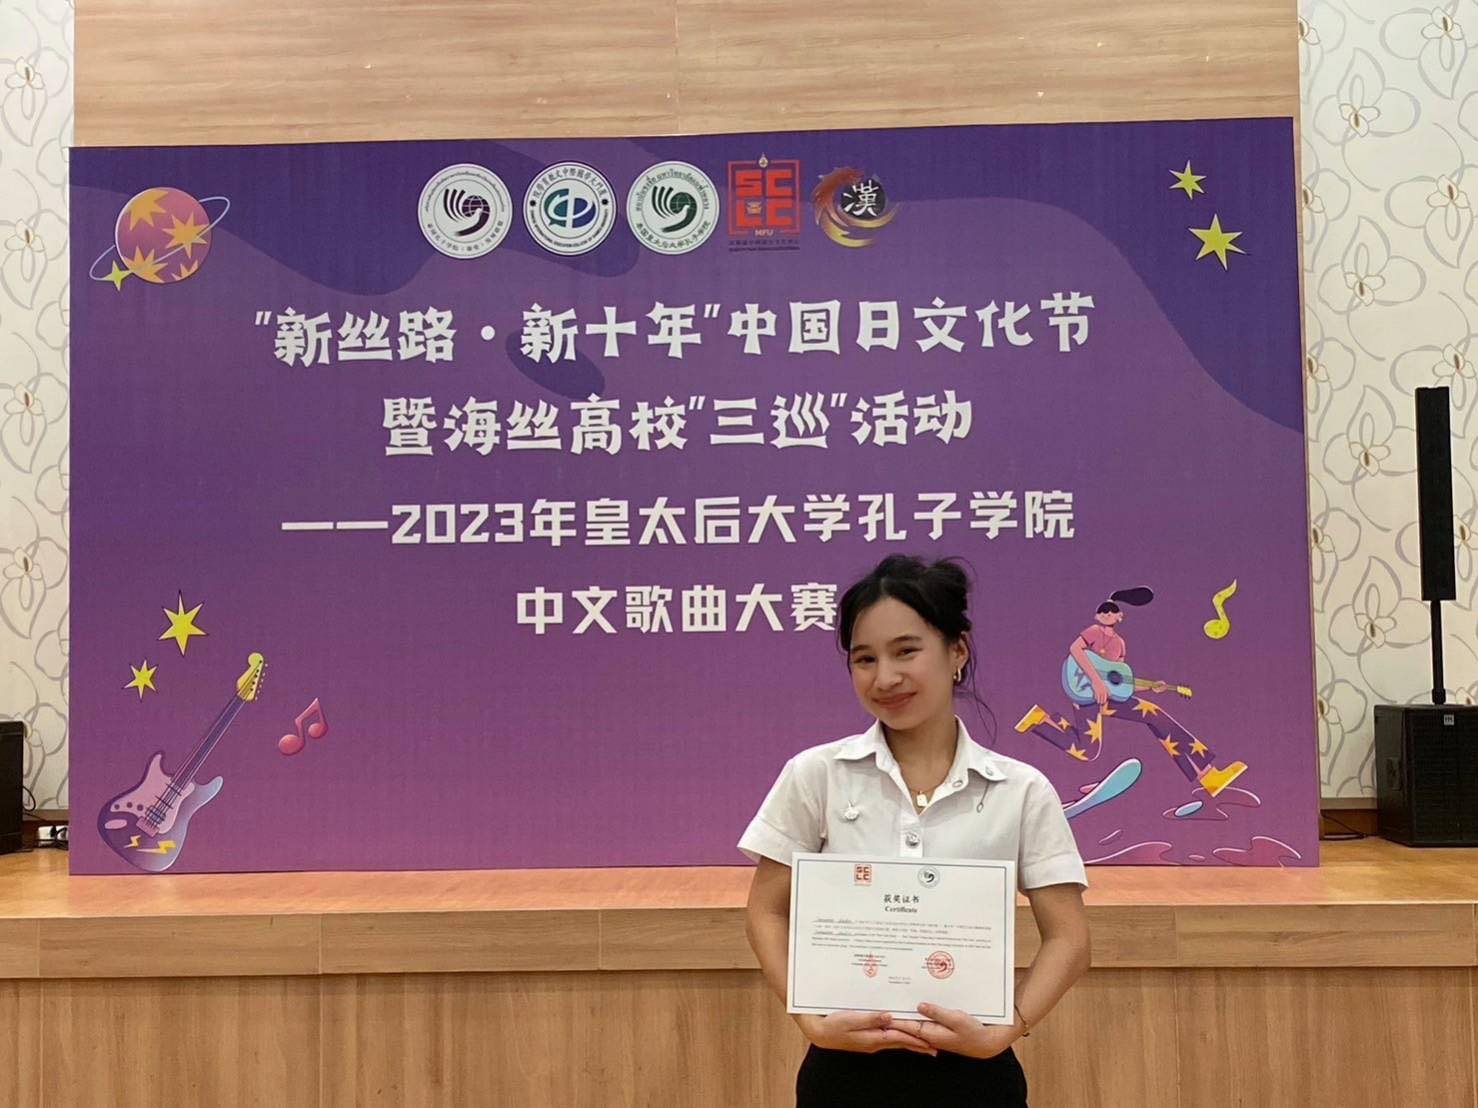 นักศึกษาสำนักวิชาจีนวิทยาได้รับรางวัลจากการประกวดร้องเพลงจีน ประจำปี 2023 ที่จัดขึ้นโดยศูนย์ภาษาและวัฒนธรรมจีนสิรินธรและสถาบันขงจื่อแห่งมหาวิทยาลัยแม่ฟ้าหลวง